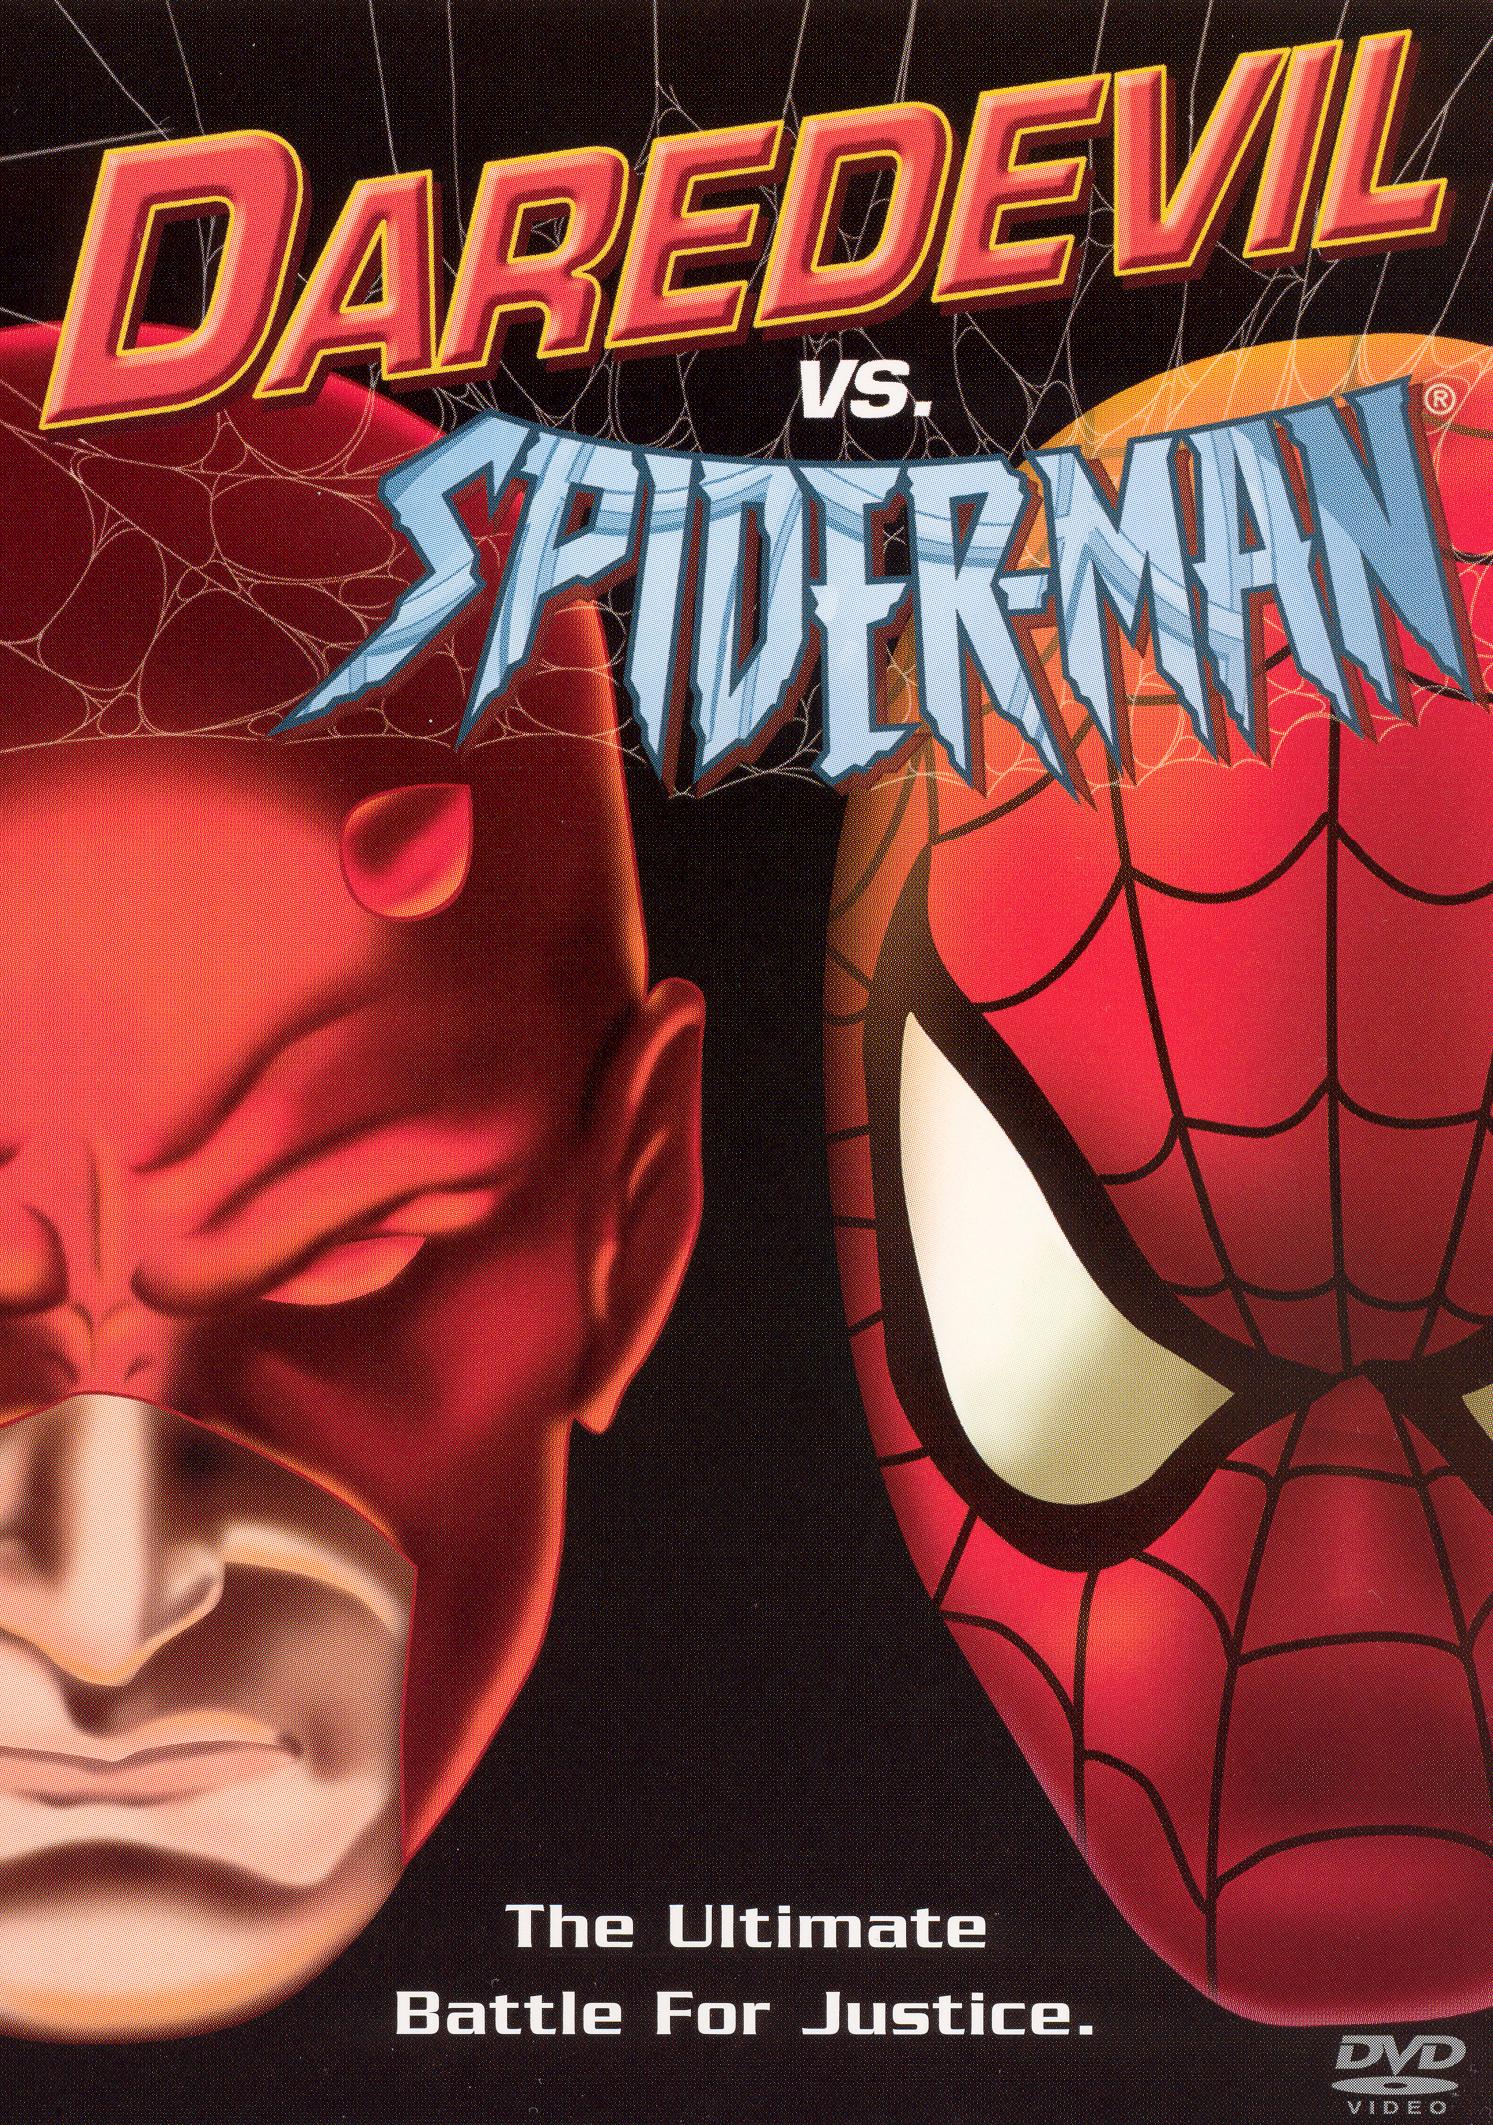 Spider man daredevil ‘Spider